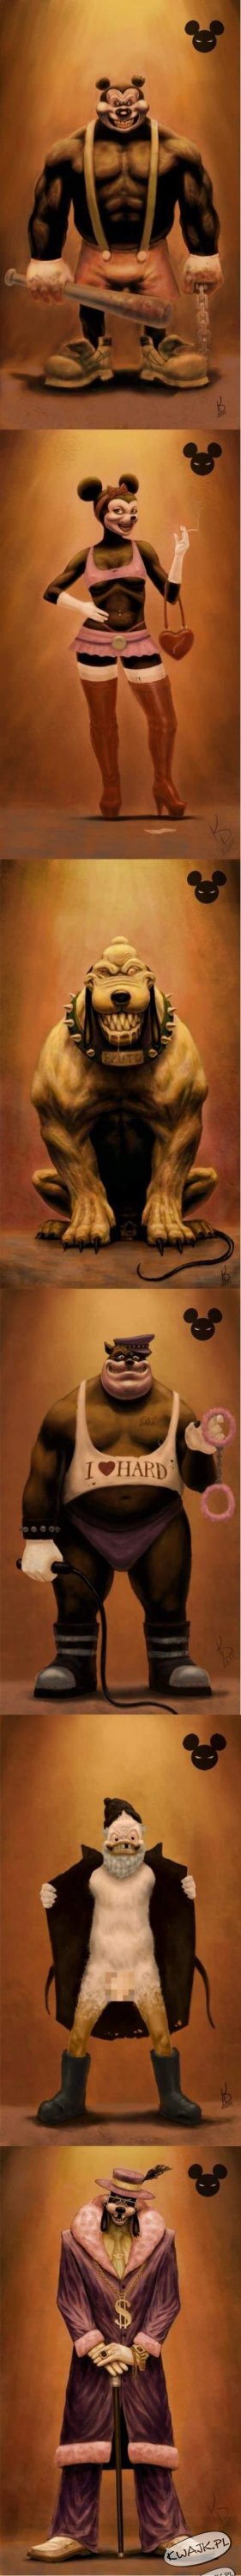 Disney na sterydach